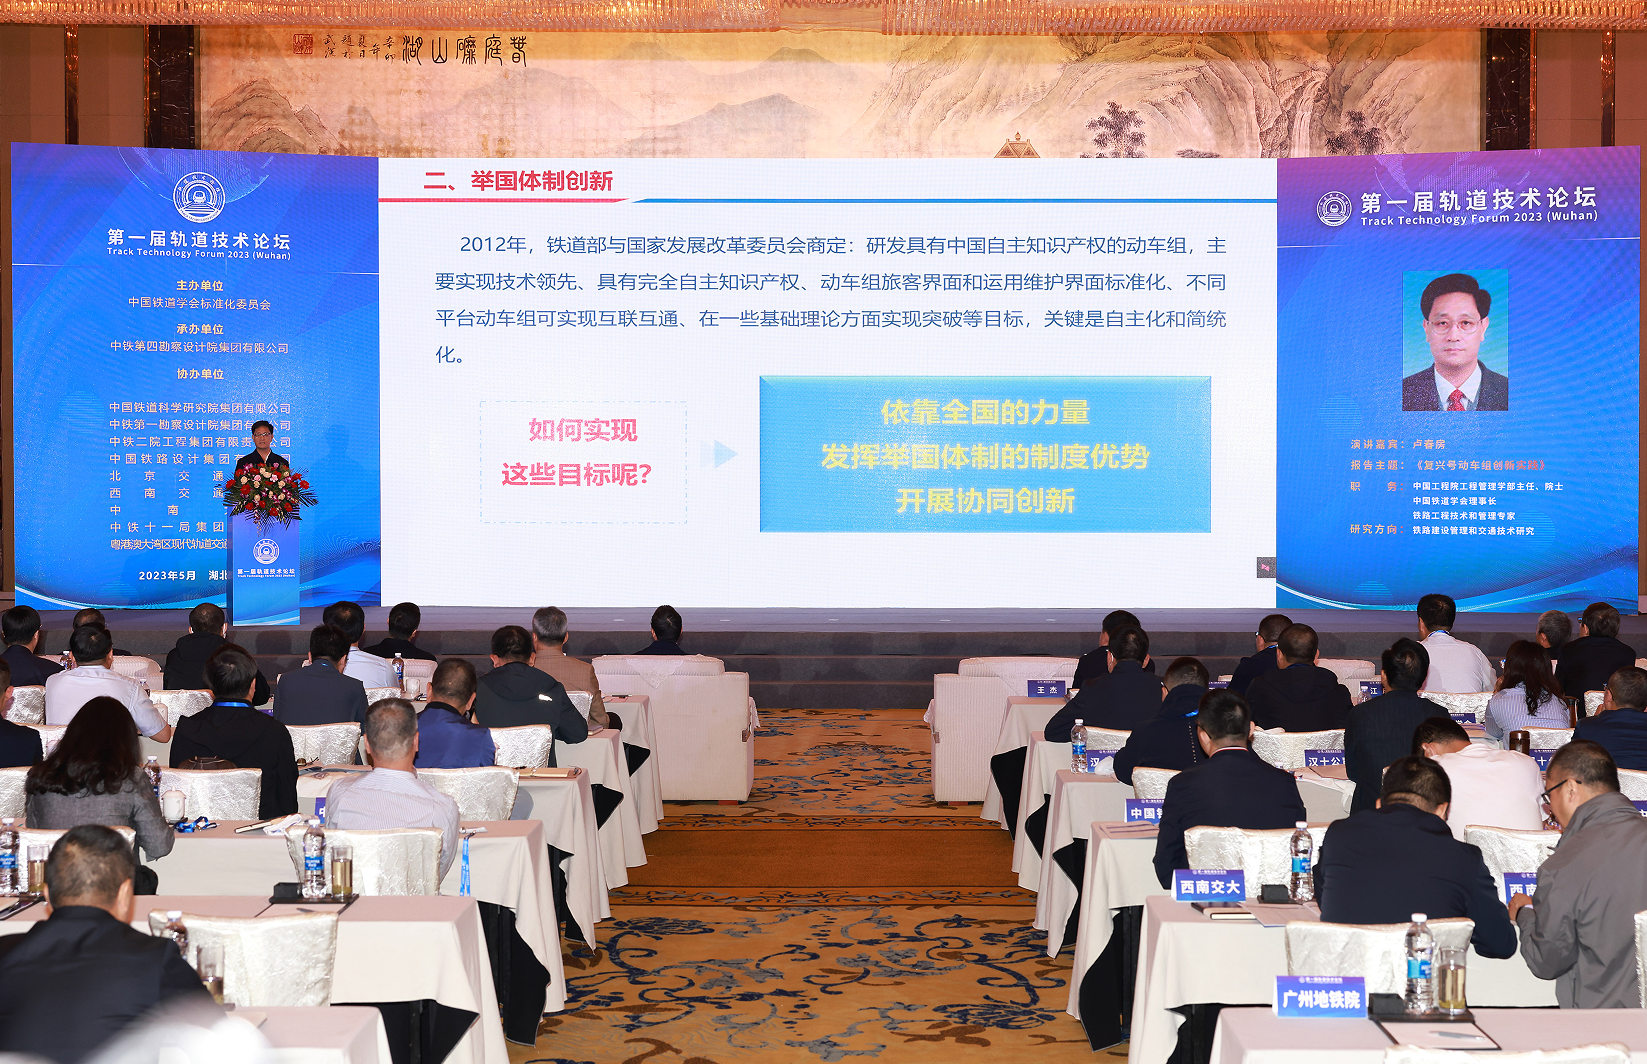 第一届轨道技术论坛在汉开幕